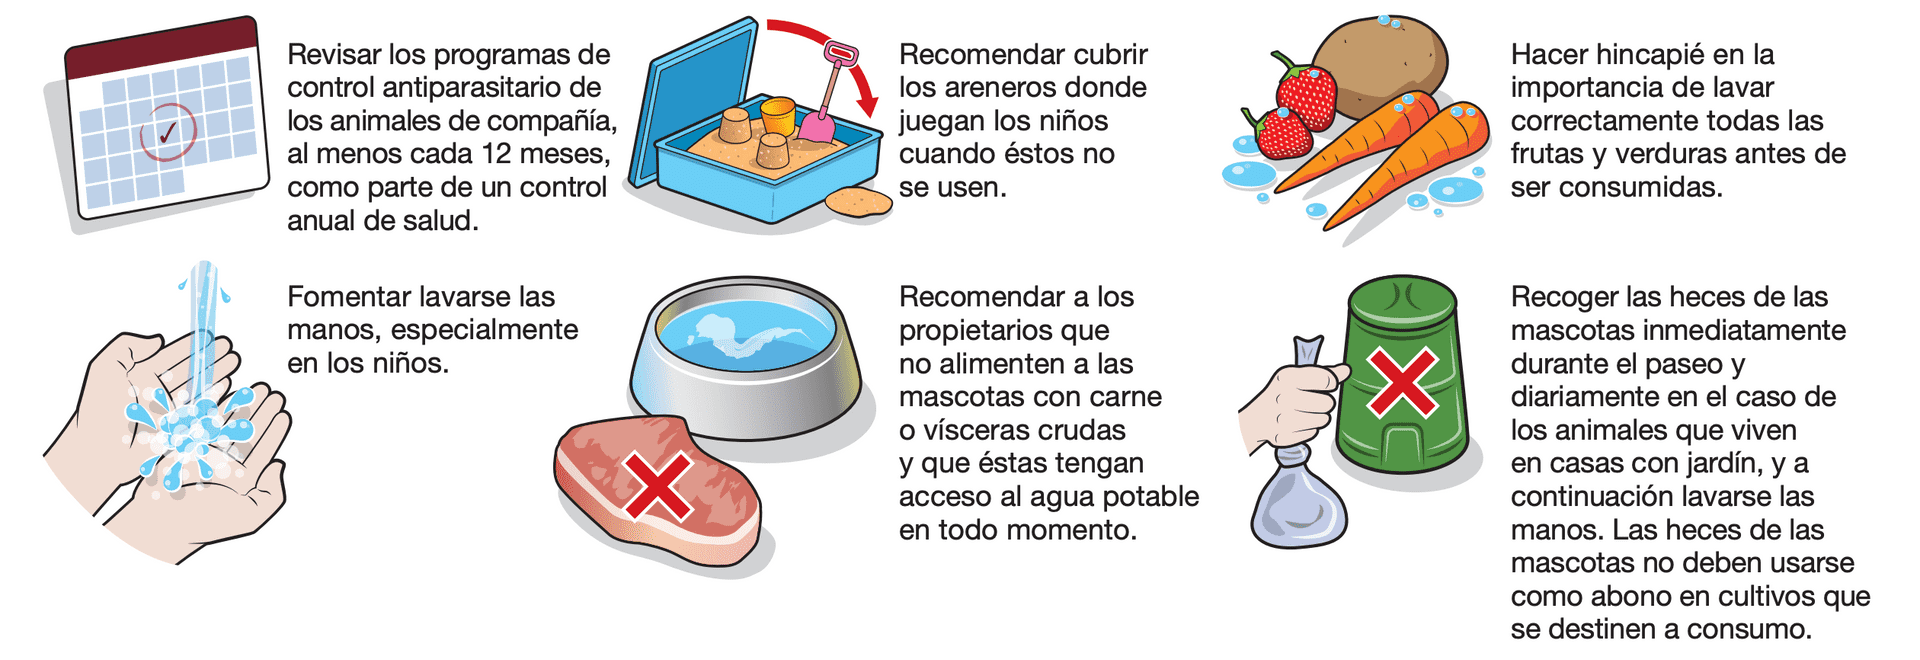 Guía de medidas higiénicas esenciales